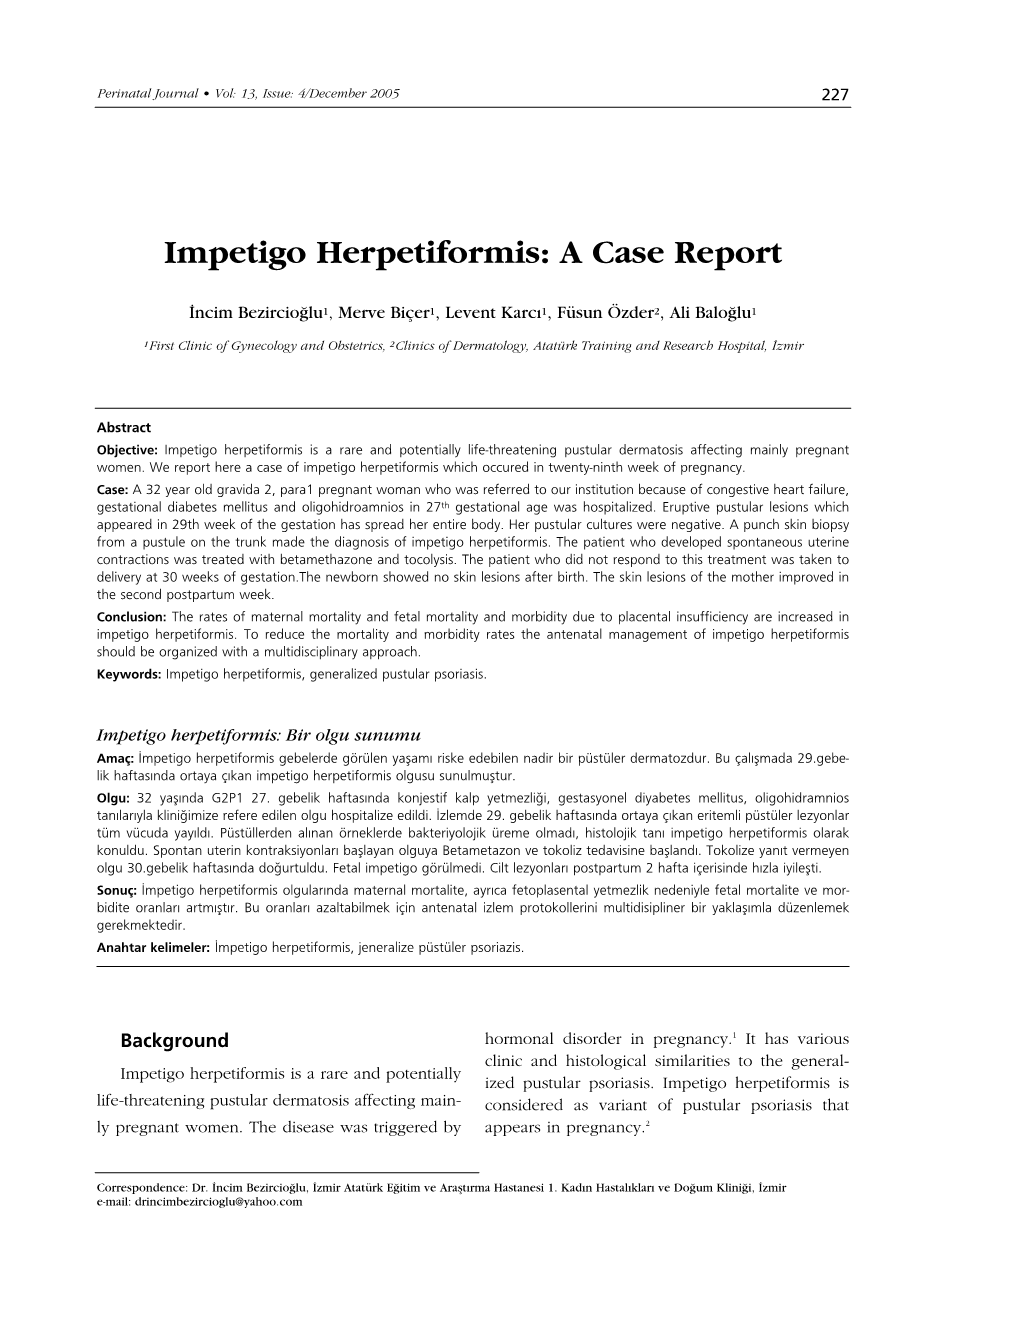 Impetigo Herpetiformis: a Case Report